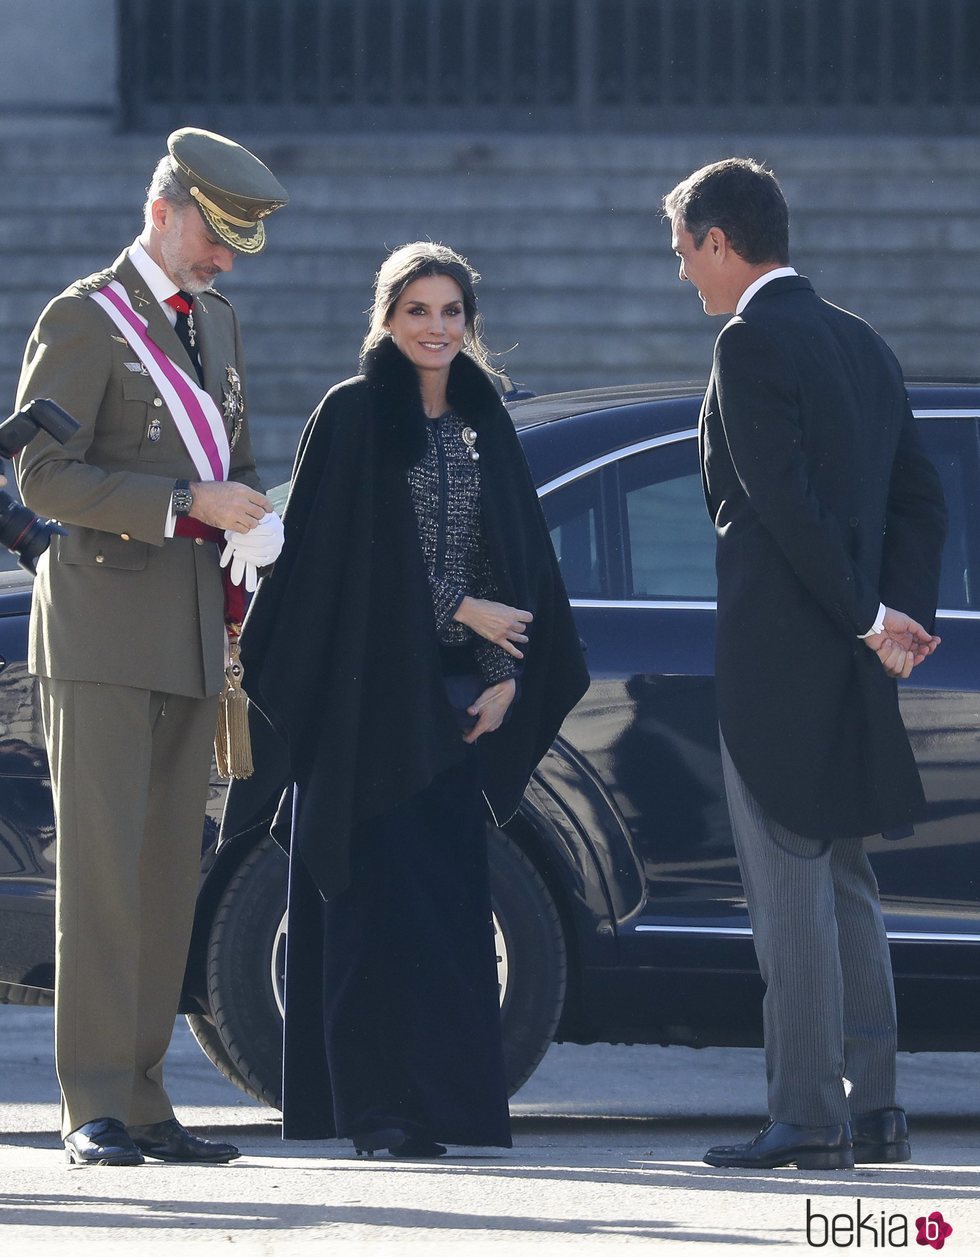 La Reina Letizia cubierta con una capa oscura durante la Pascua Militar 2019